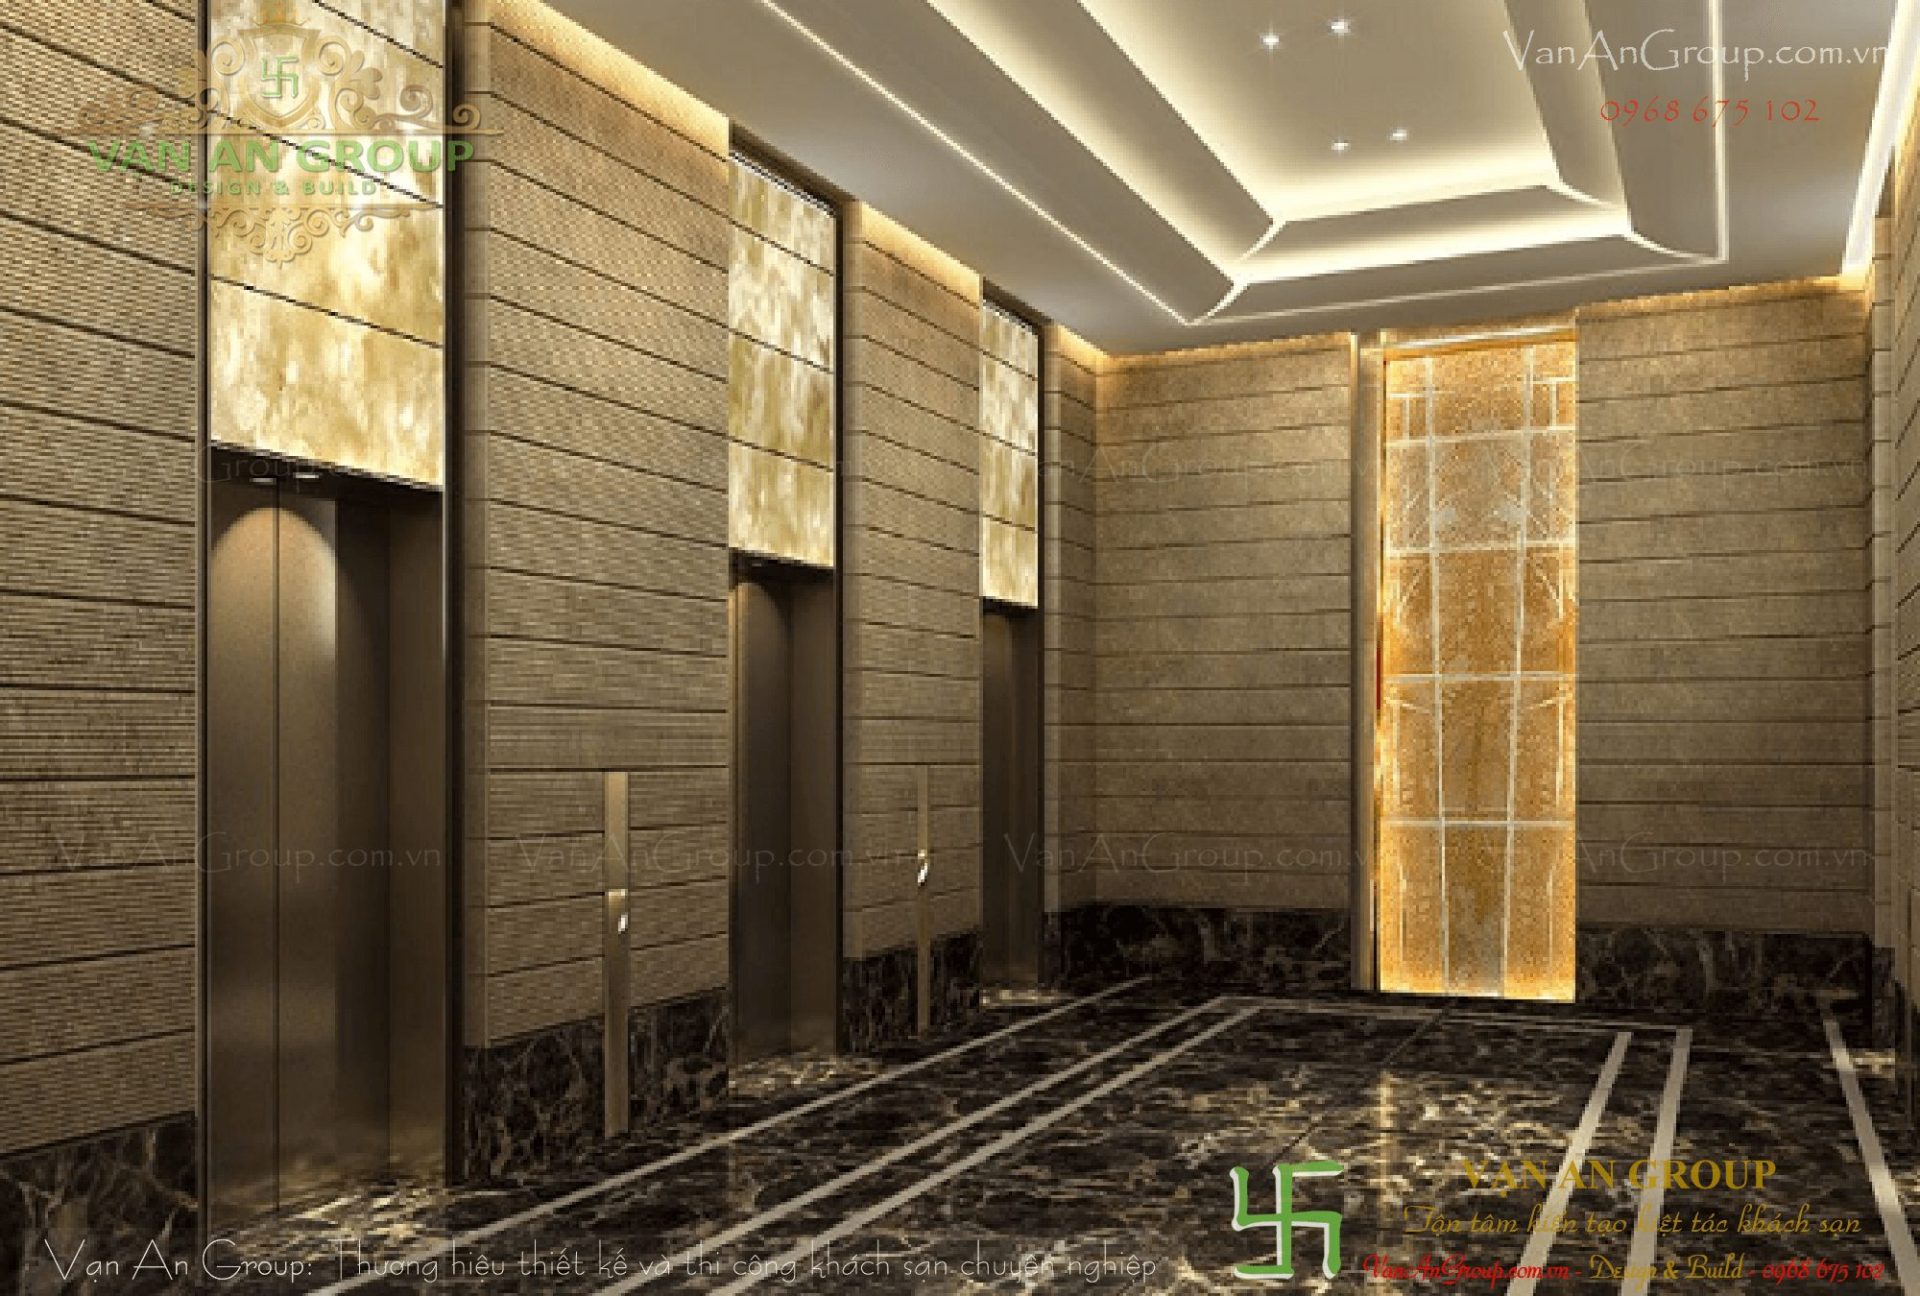 Khách sạn có hệ thống thang máy riêng cho khách hàng, nhân viên